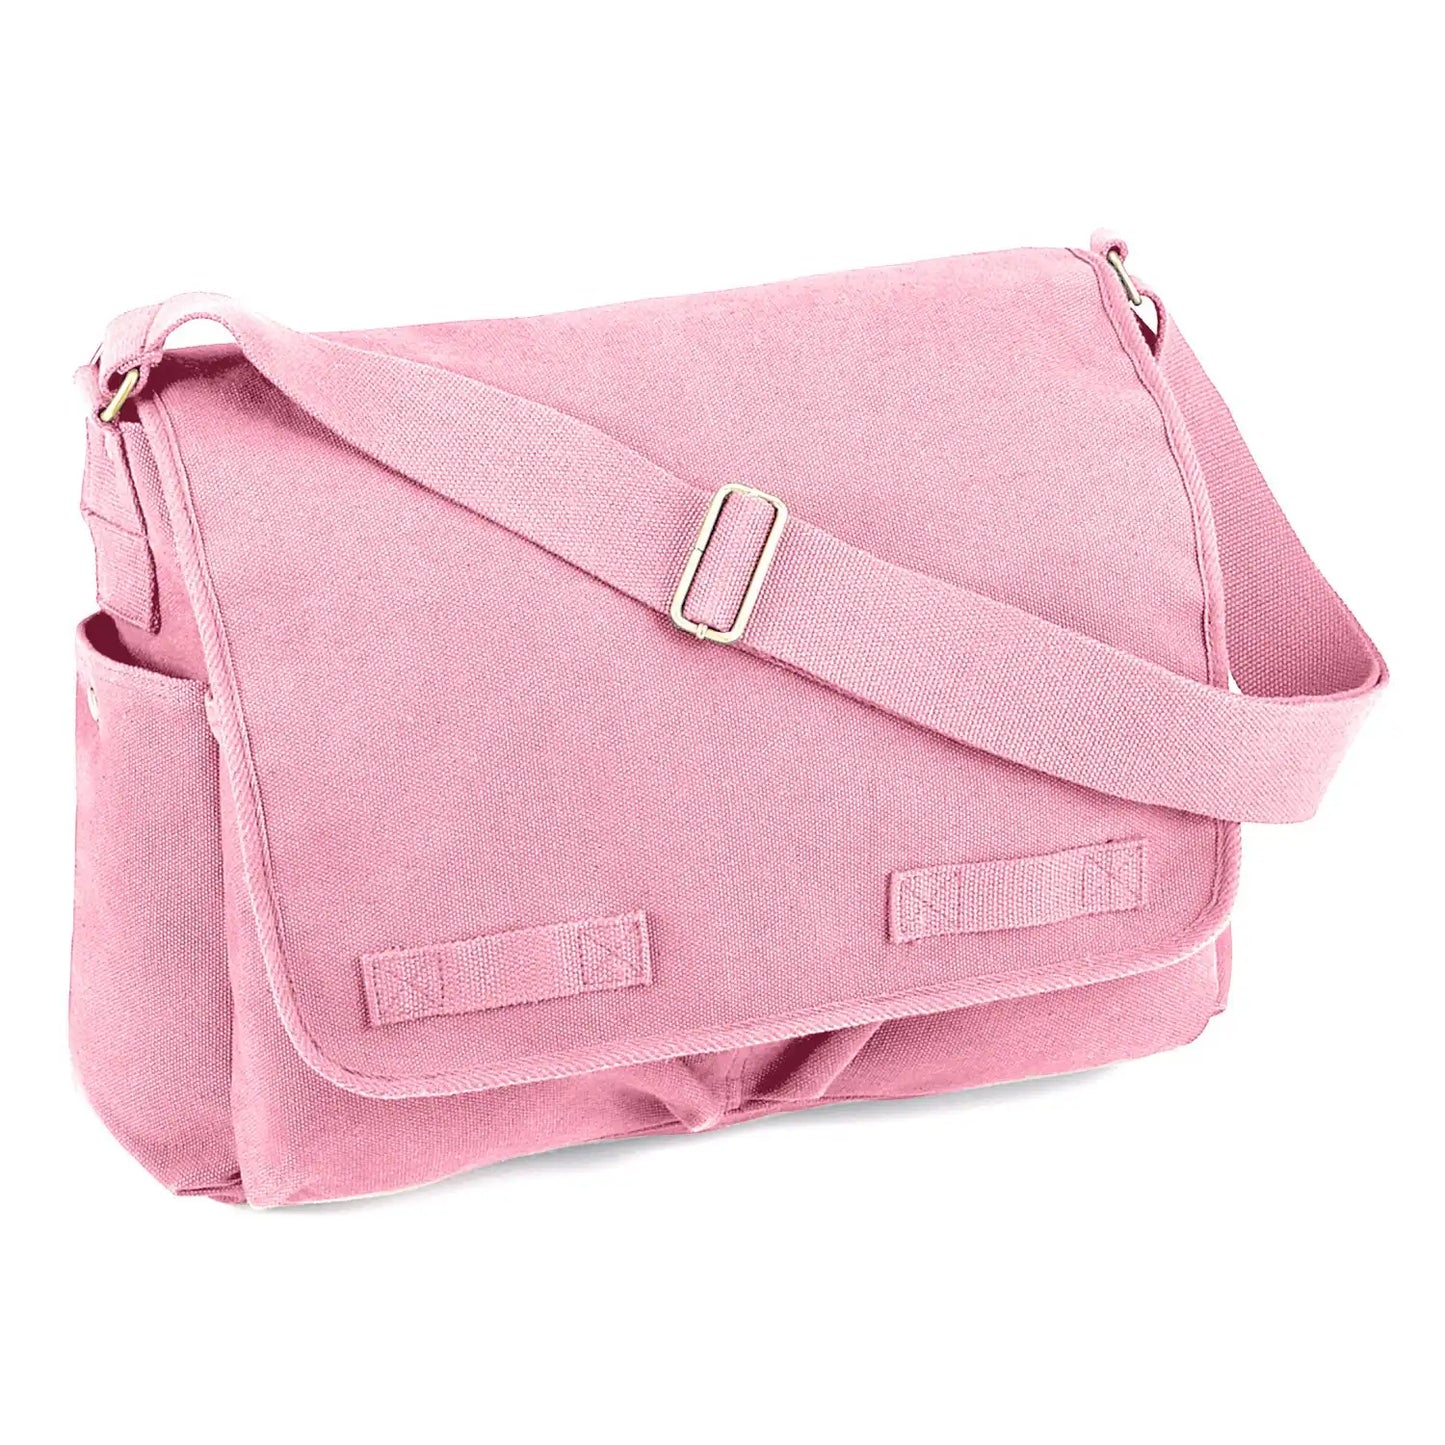 Vintage Washed Canvas Messenger Bag, Adjustable Shoulder Strap, Pink